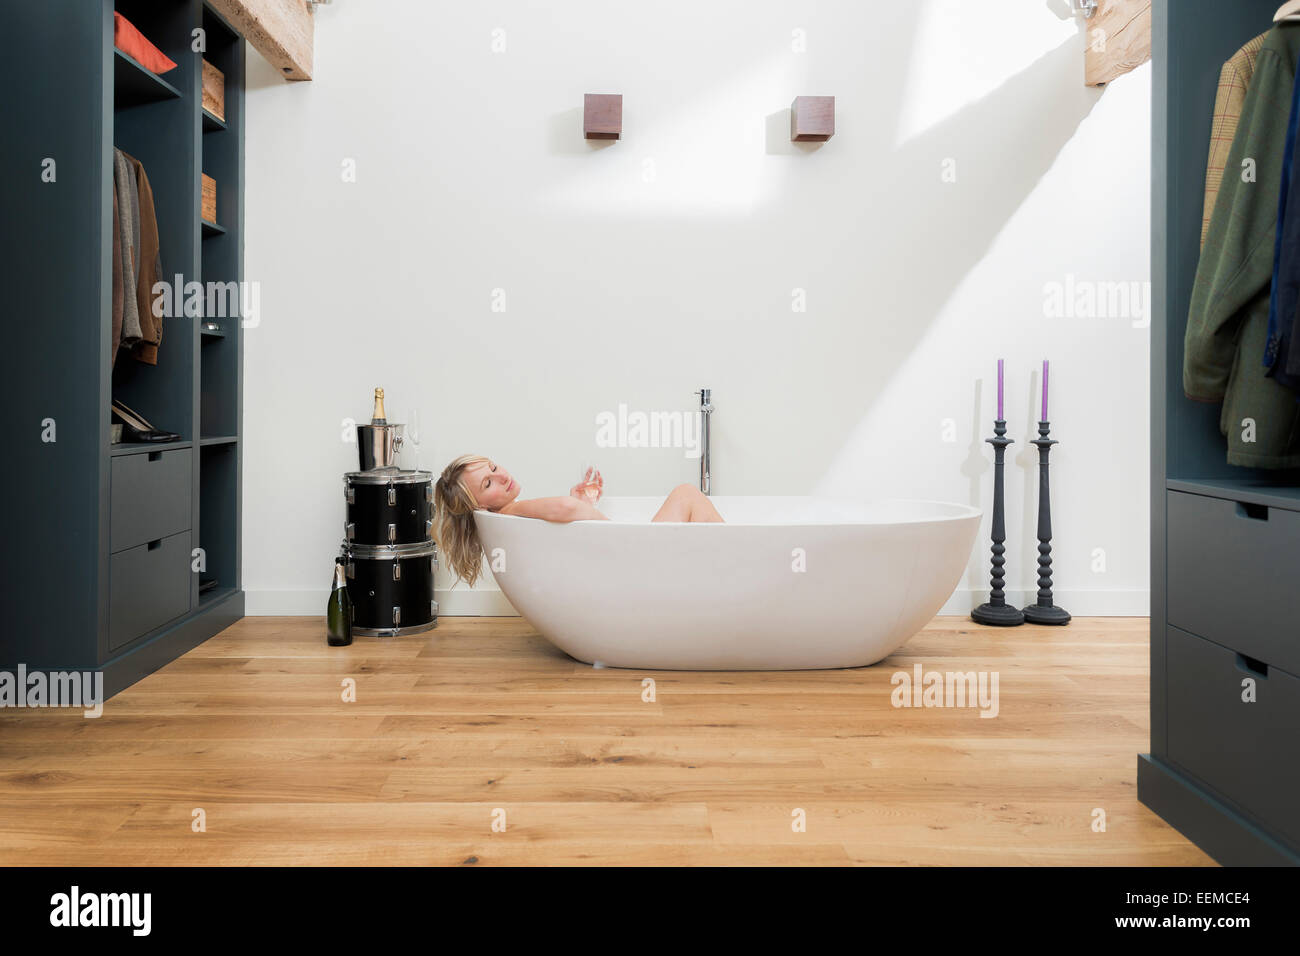 Caucasian woman relaxing in baignoire dans salle de bains moderne Banque D'Images